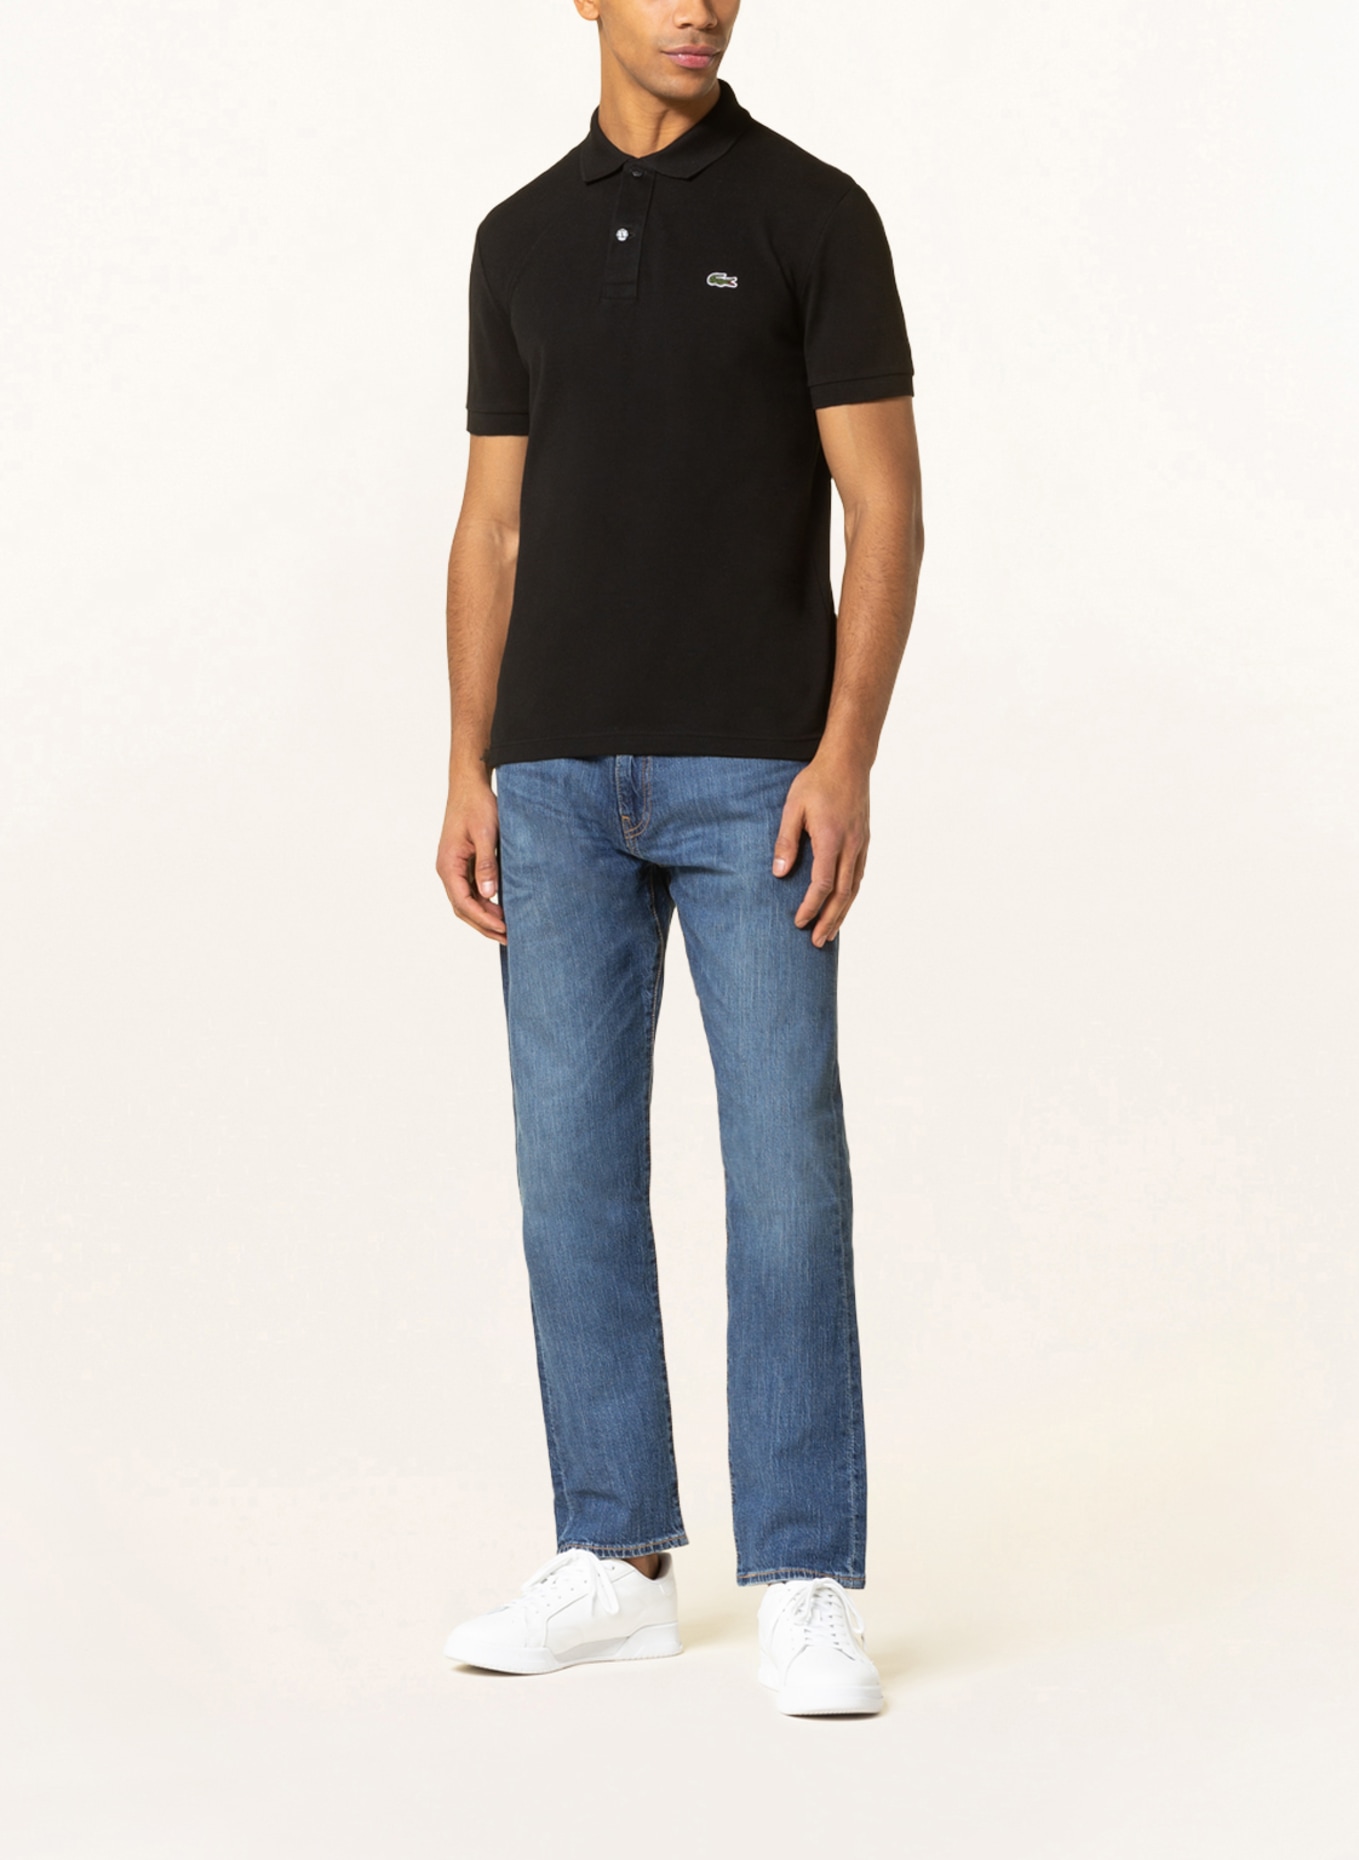 LACOSTE Piqué-Poloshirt Slim Fit, Farbe: SCHWARZ (Bild 2)